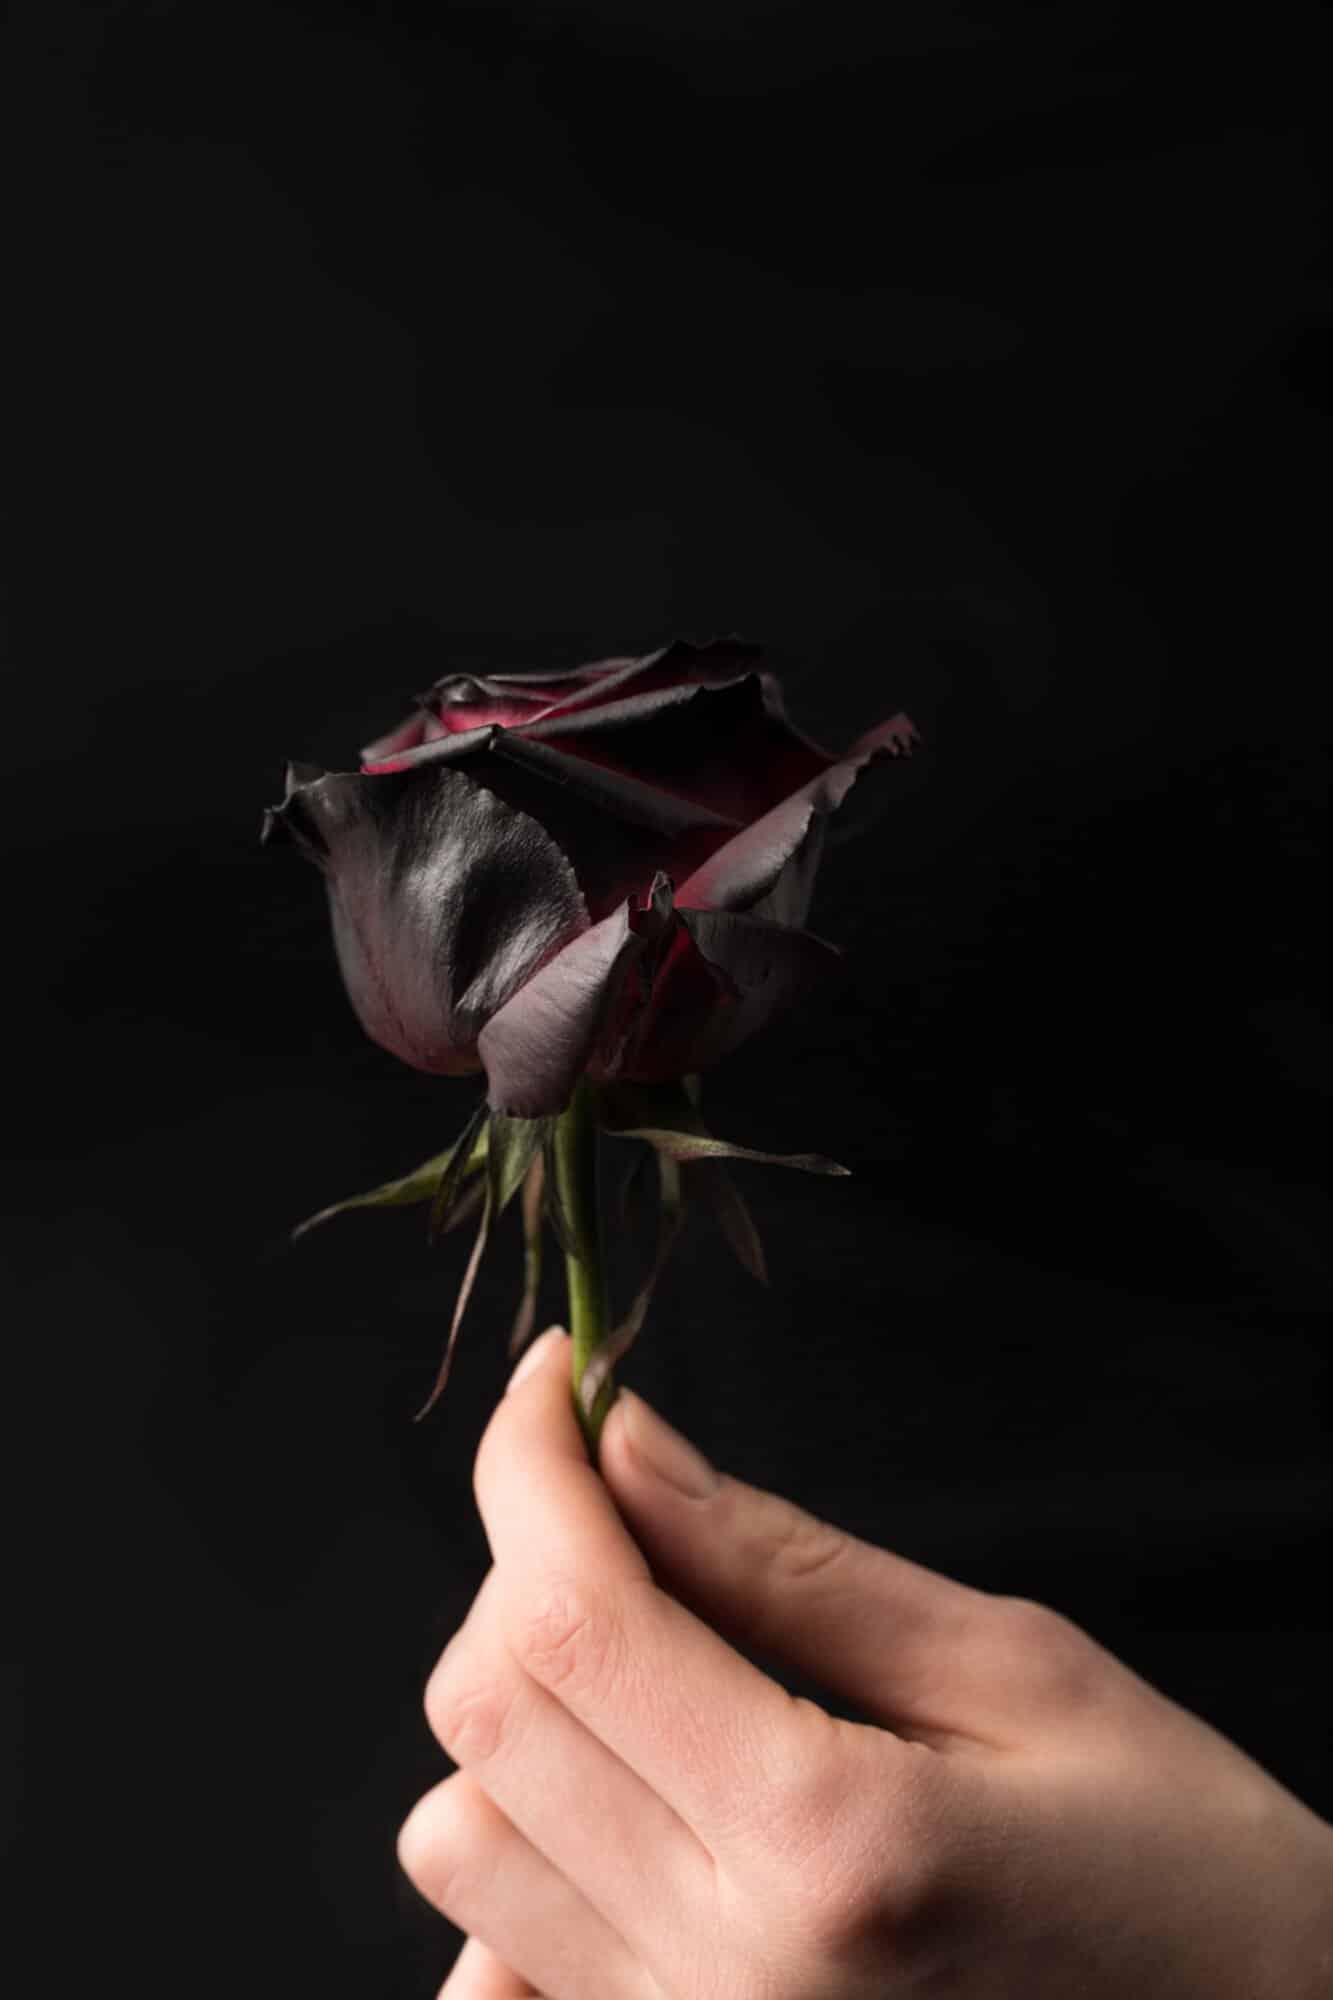 Flor rosa negra con significado negativo 2